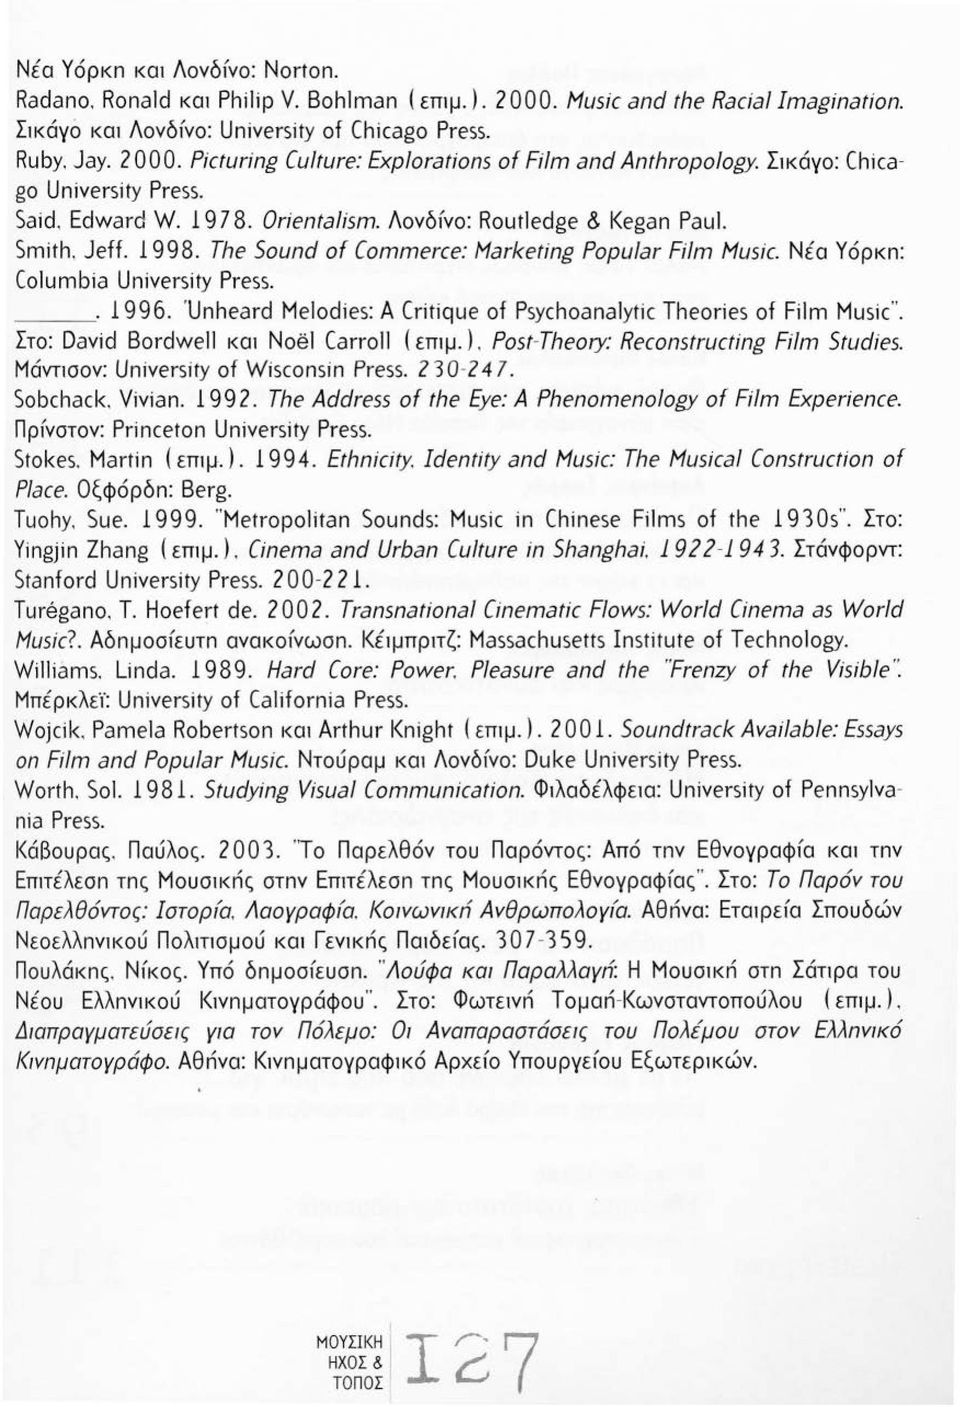 Νέα Υόρκn: Columbia Uniνersity Press. _. 996. 'Unheard Melodies: Α Critique of Psychoanalytic Theories of Film Music". Στο: Daνid Bordwe και Noe] Carro ( επψ.).